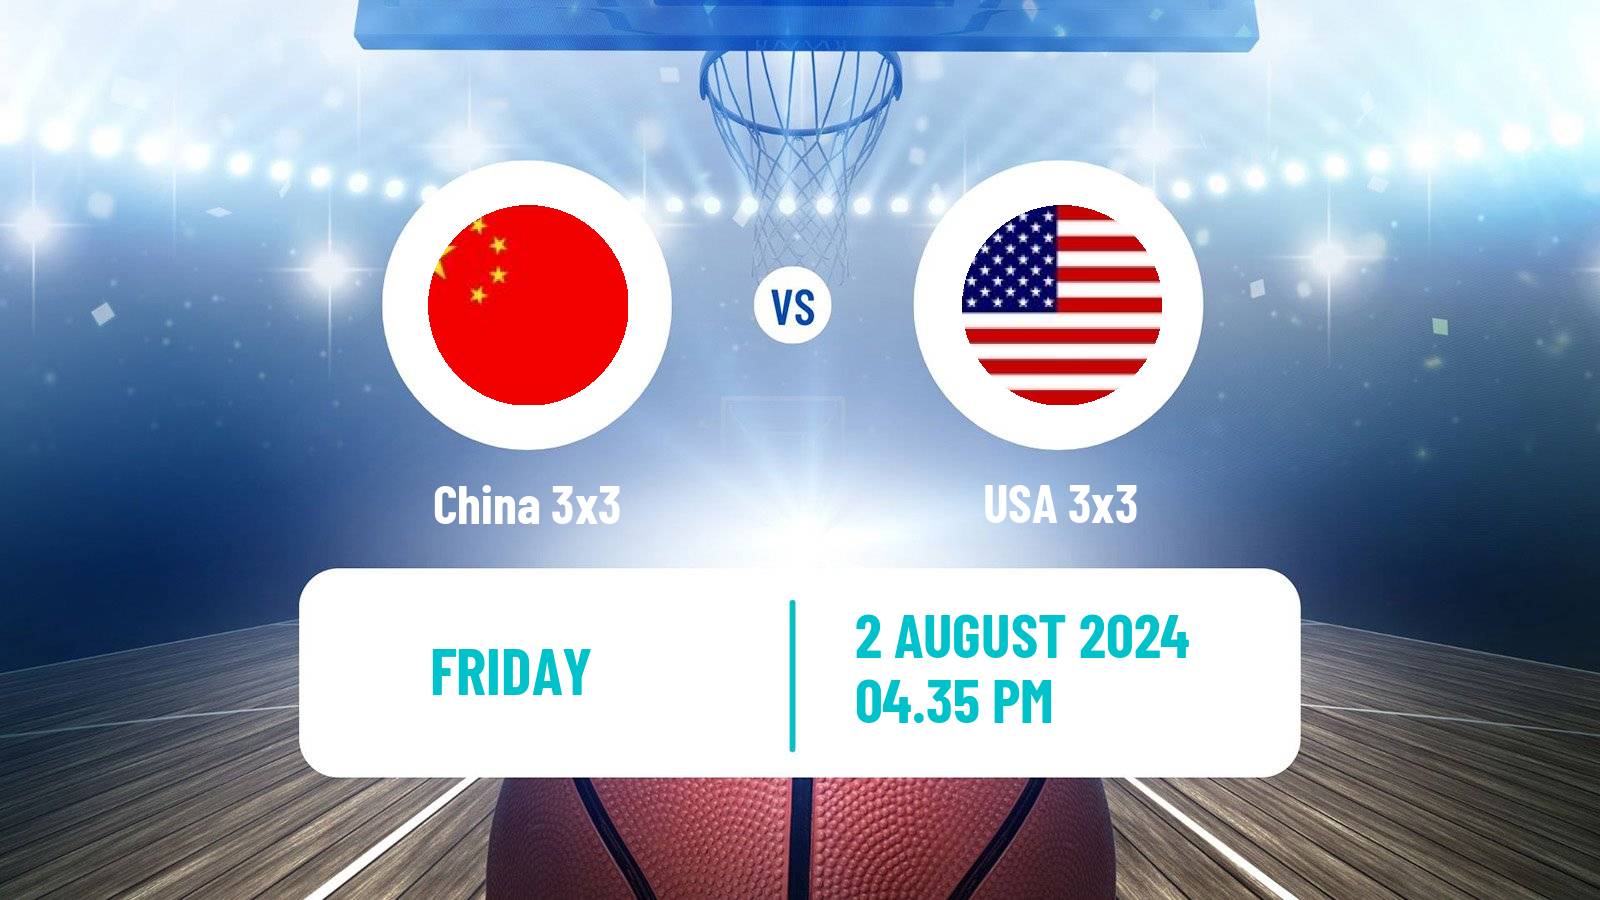 Basketball Olympic Games Basketball 3x3 China 3x3 - USA 3x3